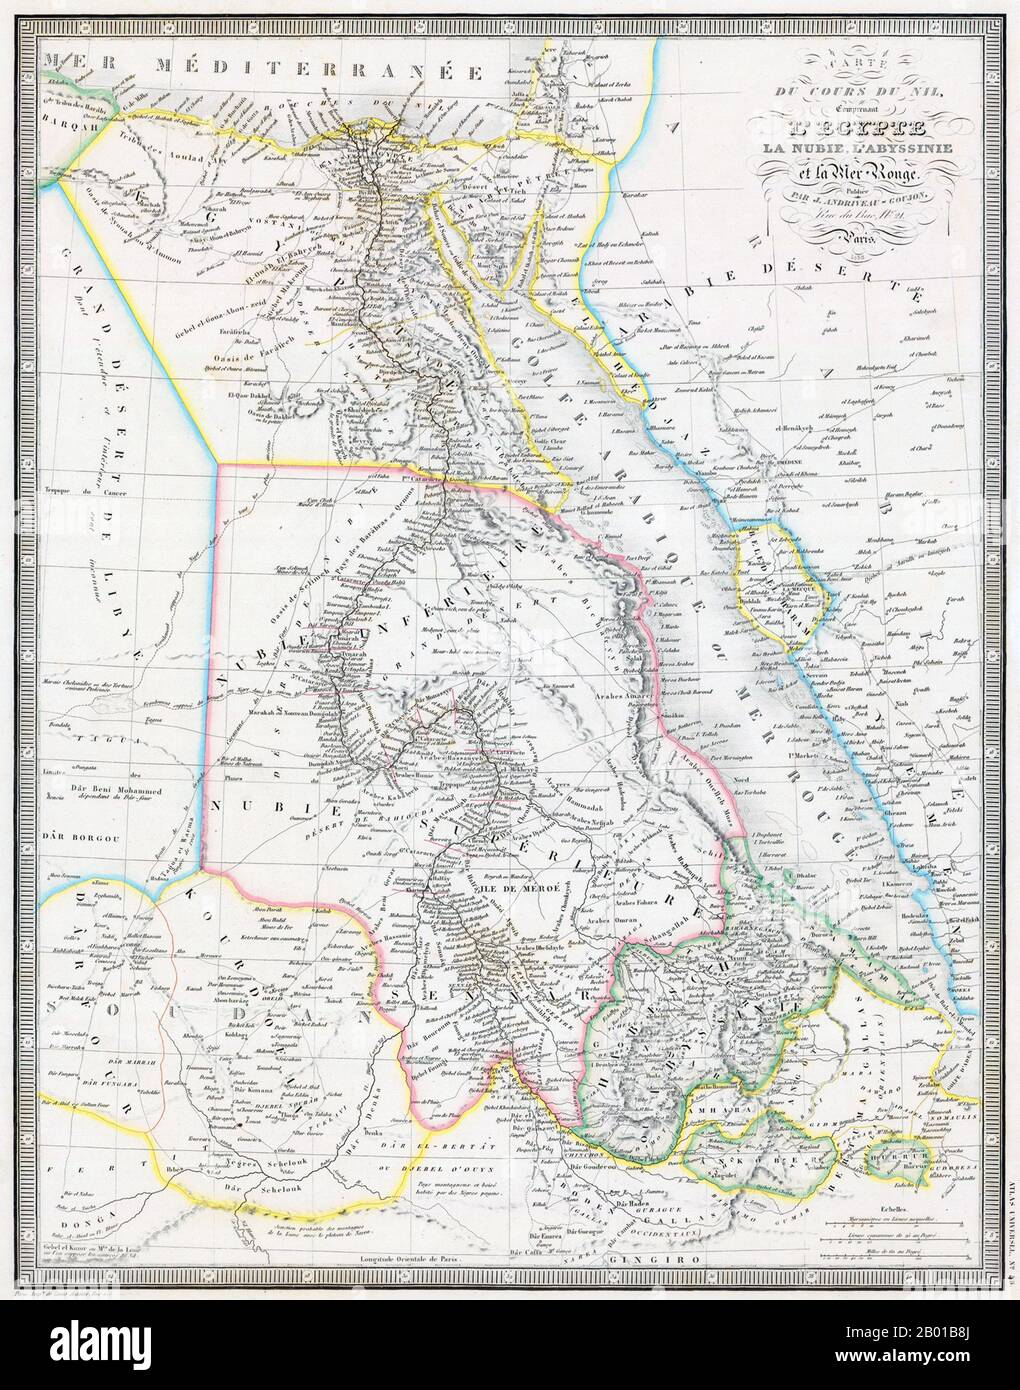 Nord-est Africa: Mappa del Nilo dalla sorgente in Abissinia al Mediterraneo, di Jean Andriveau-Goujon (1832-1897), 1858. Il punto focale di questa mappa è chiaramente il percorso del Nilo Blu fino al suo incrocio con il Nilo Bianco a Khartoum e il corso combinato del fiume verso il Mediterraneo. Sono mostrati numerosi nomi di luoghi, come le sei cataratte del fiume tra Assuan e Khartoum. Le Montagne della Luna (montagnes de la lune) sono presenti nell'angolo inferiore sinistro, dove le fonti del Nilo Bianco eludono ancora la scoperta. Foto Stock